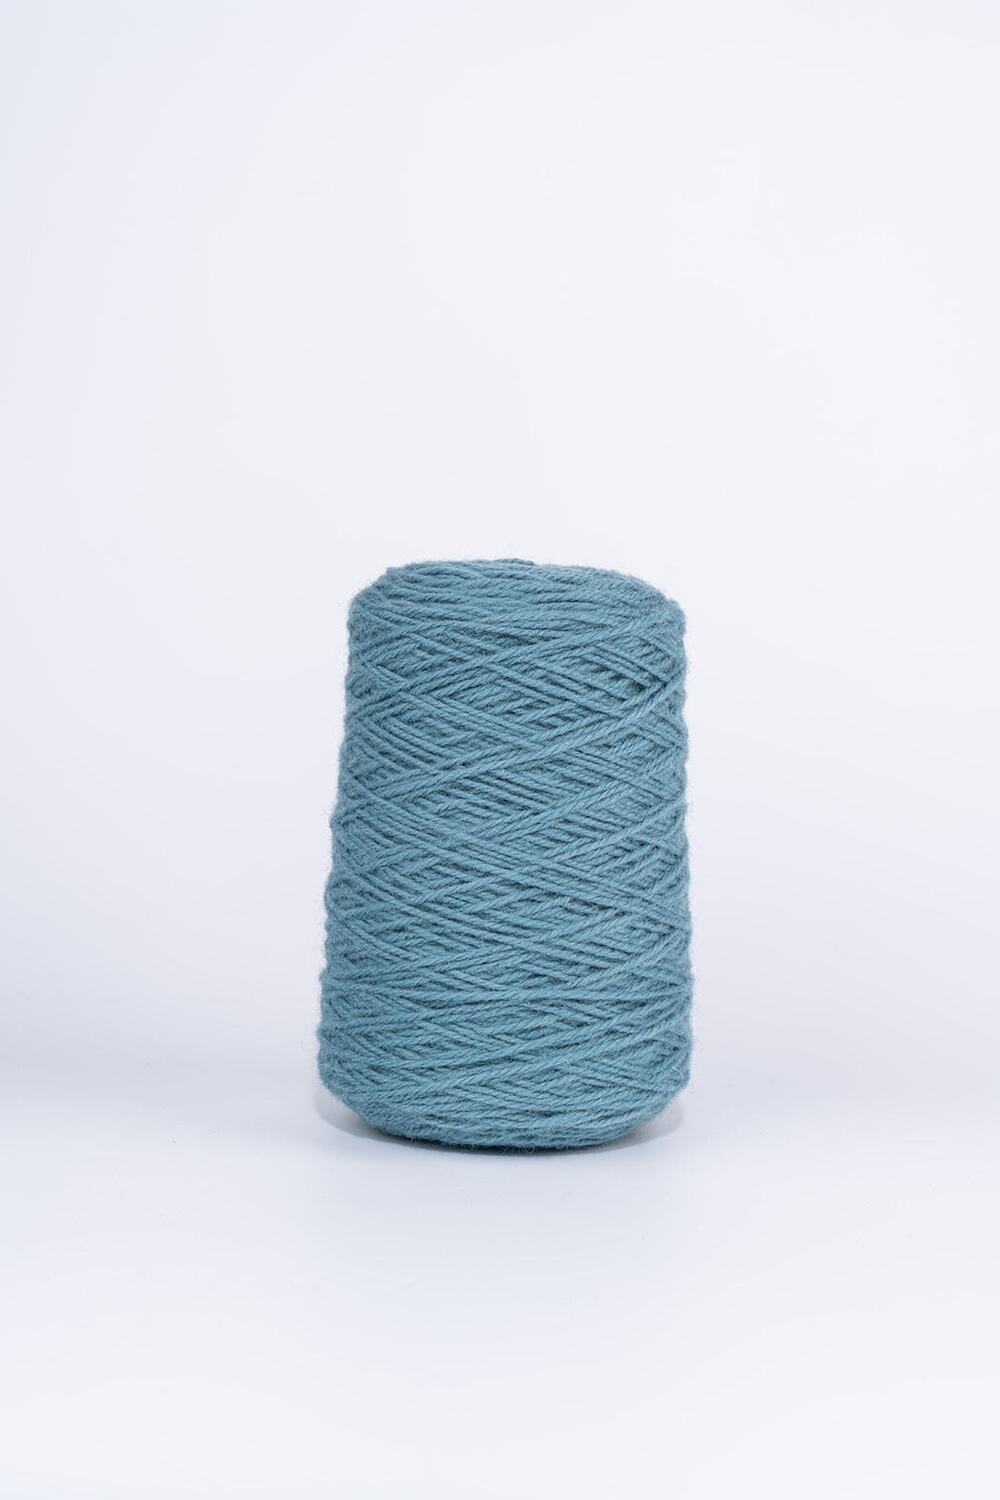 100% Wool Rug Yarn On Cones - Petroleum Blue